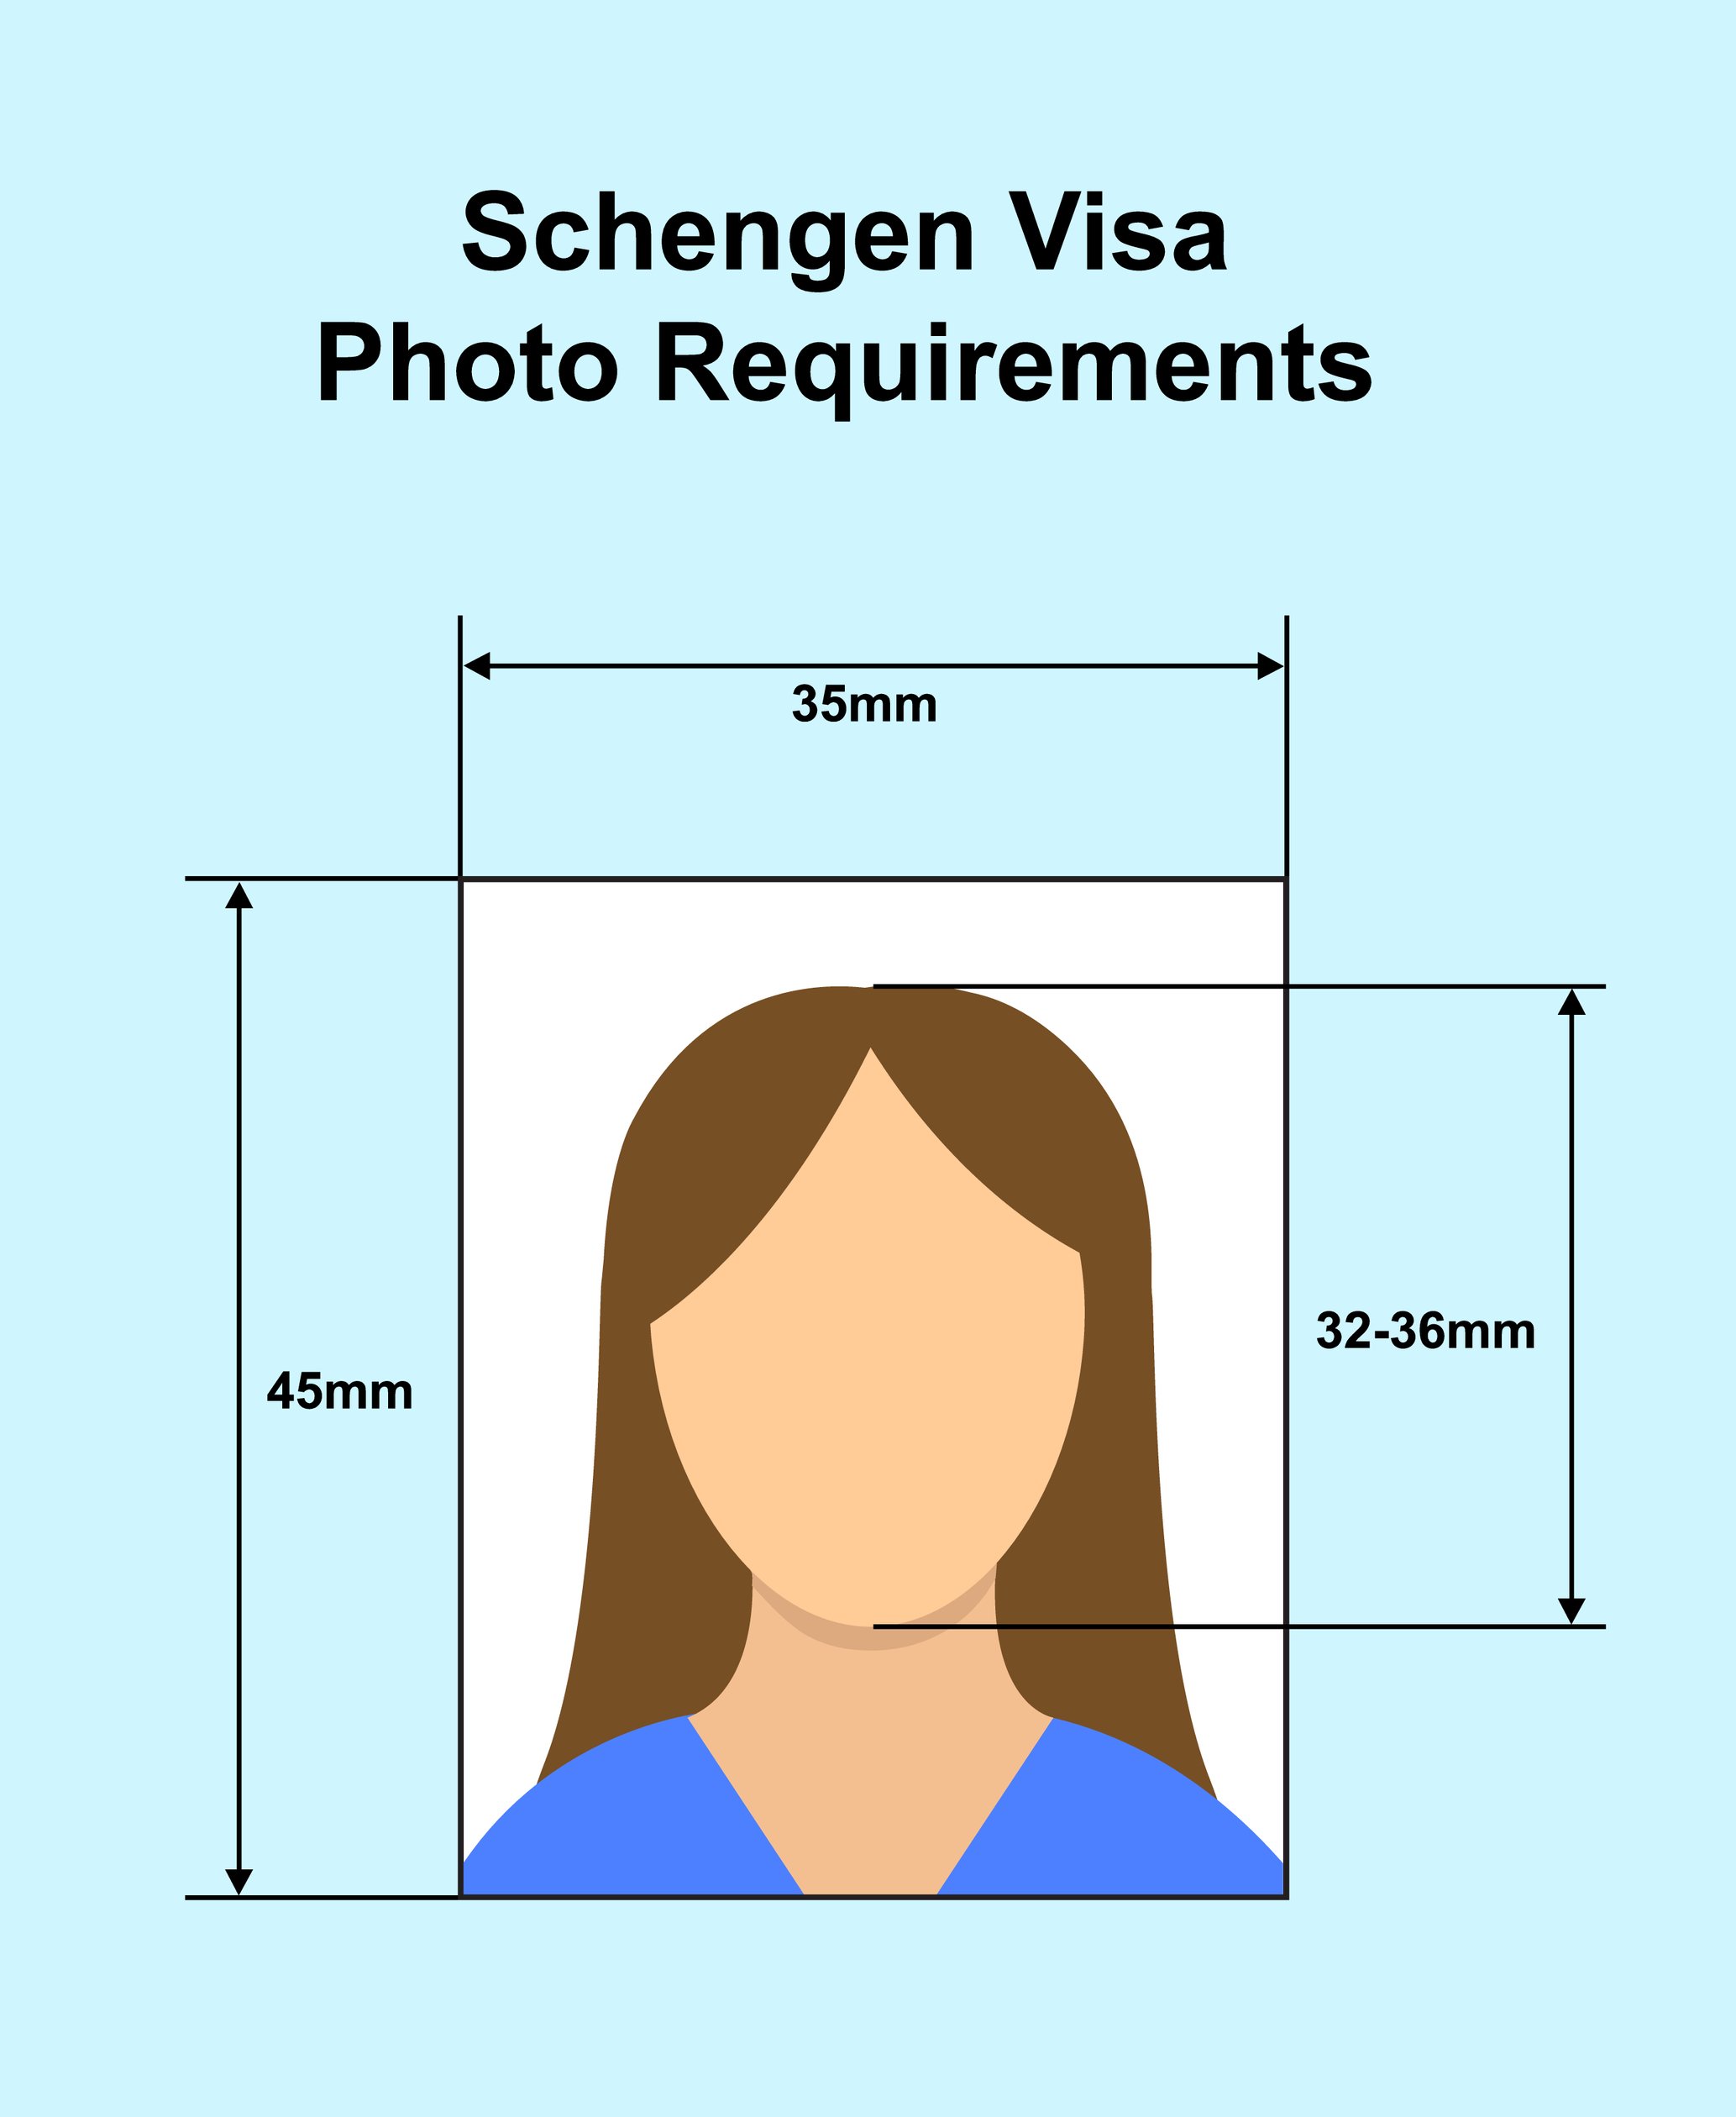 Schengen Visa Photo Requirements Photo Specifications